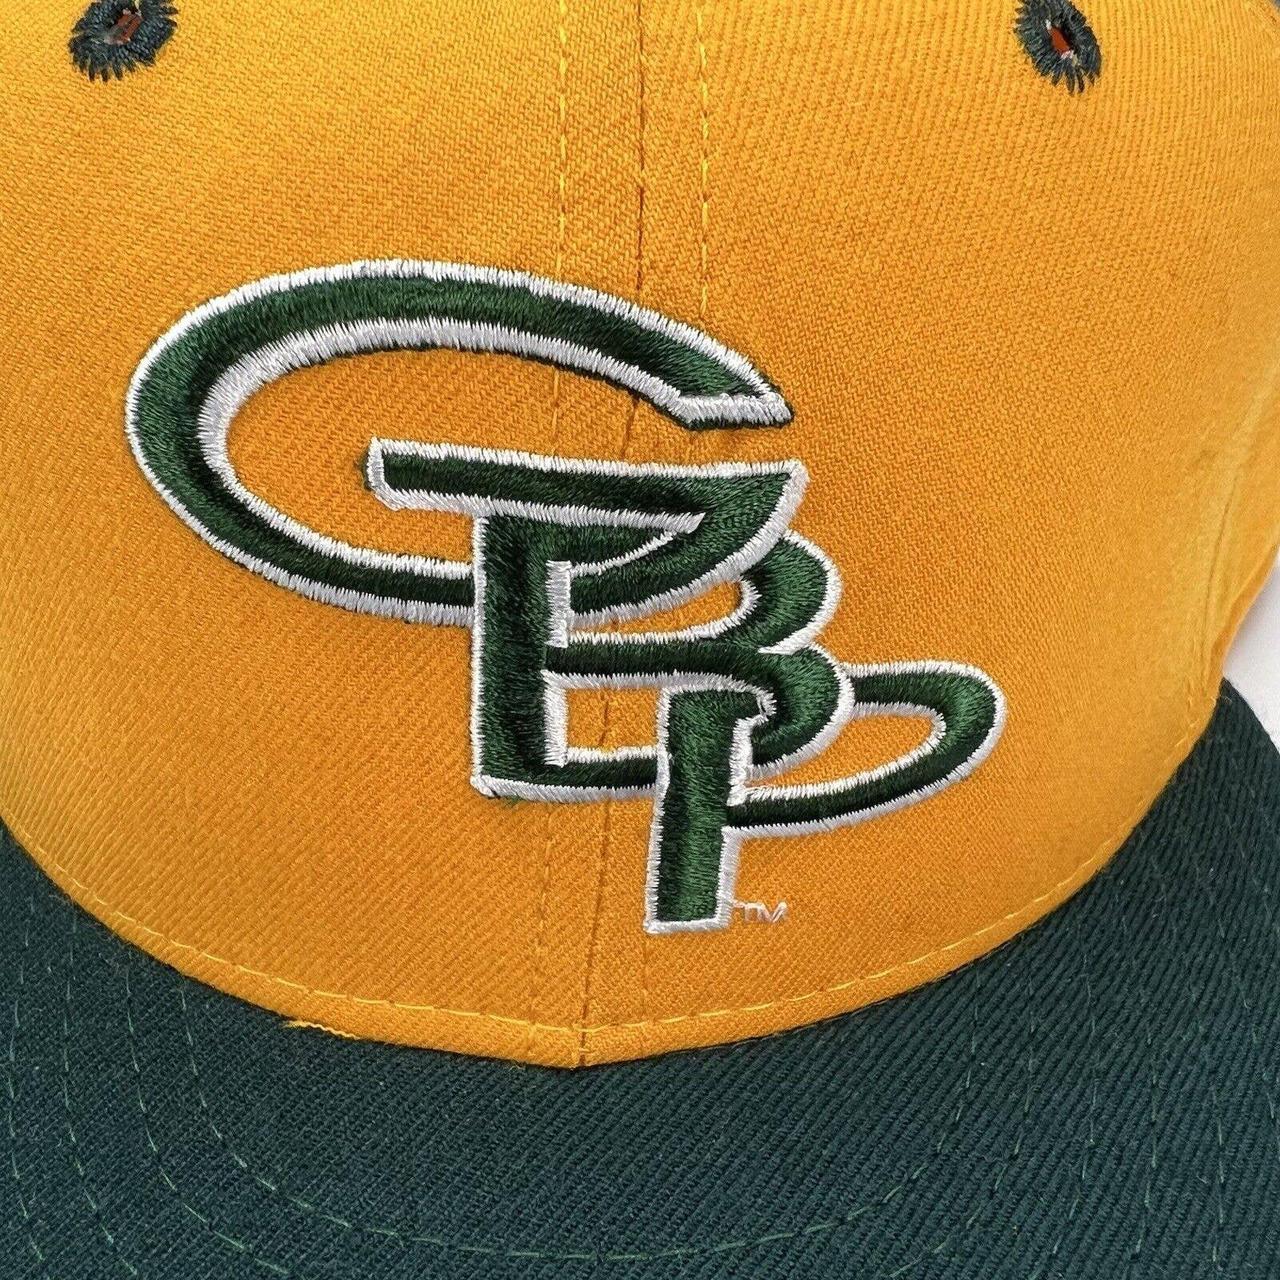 Vintage Green Bay Packers Hat Super clean vintage - Depop